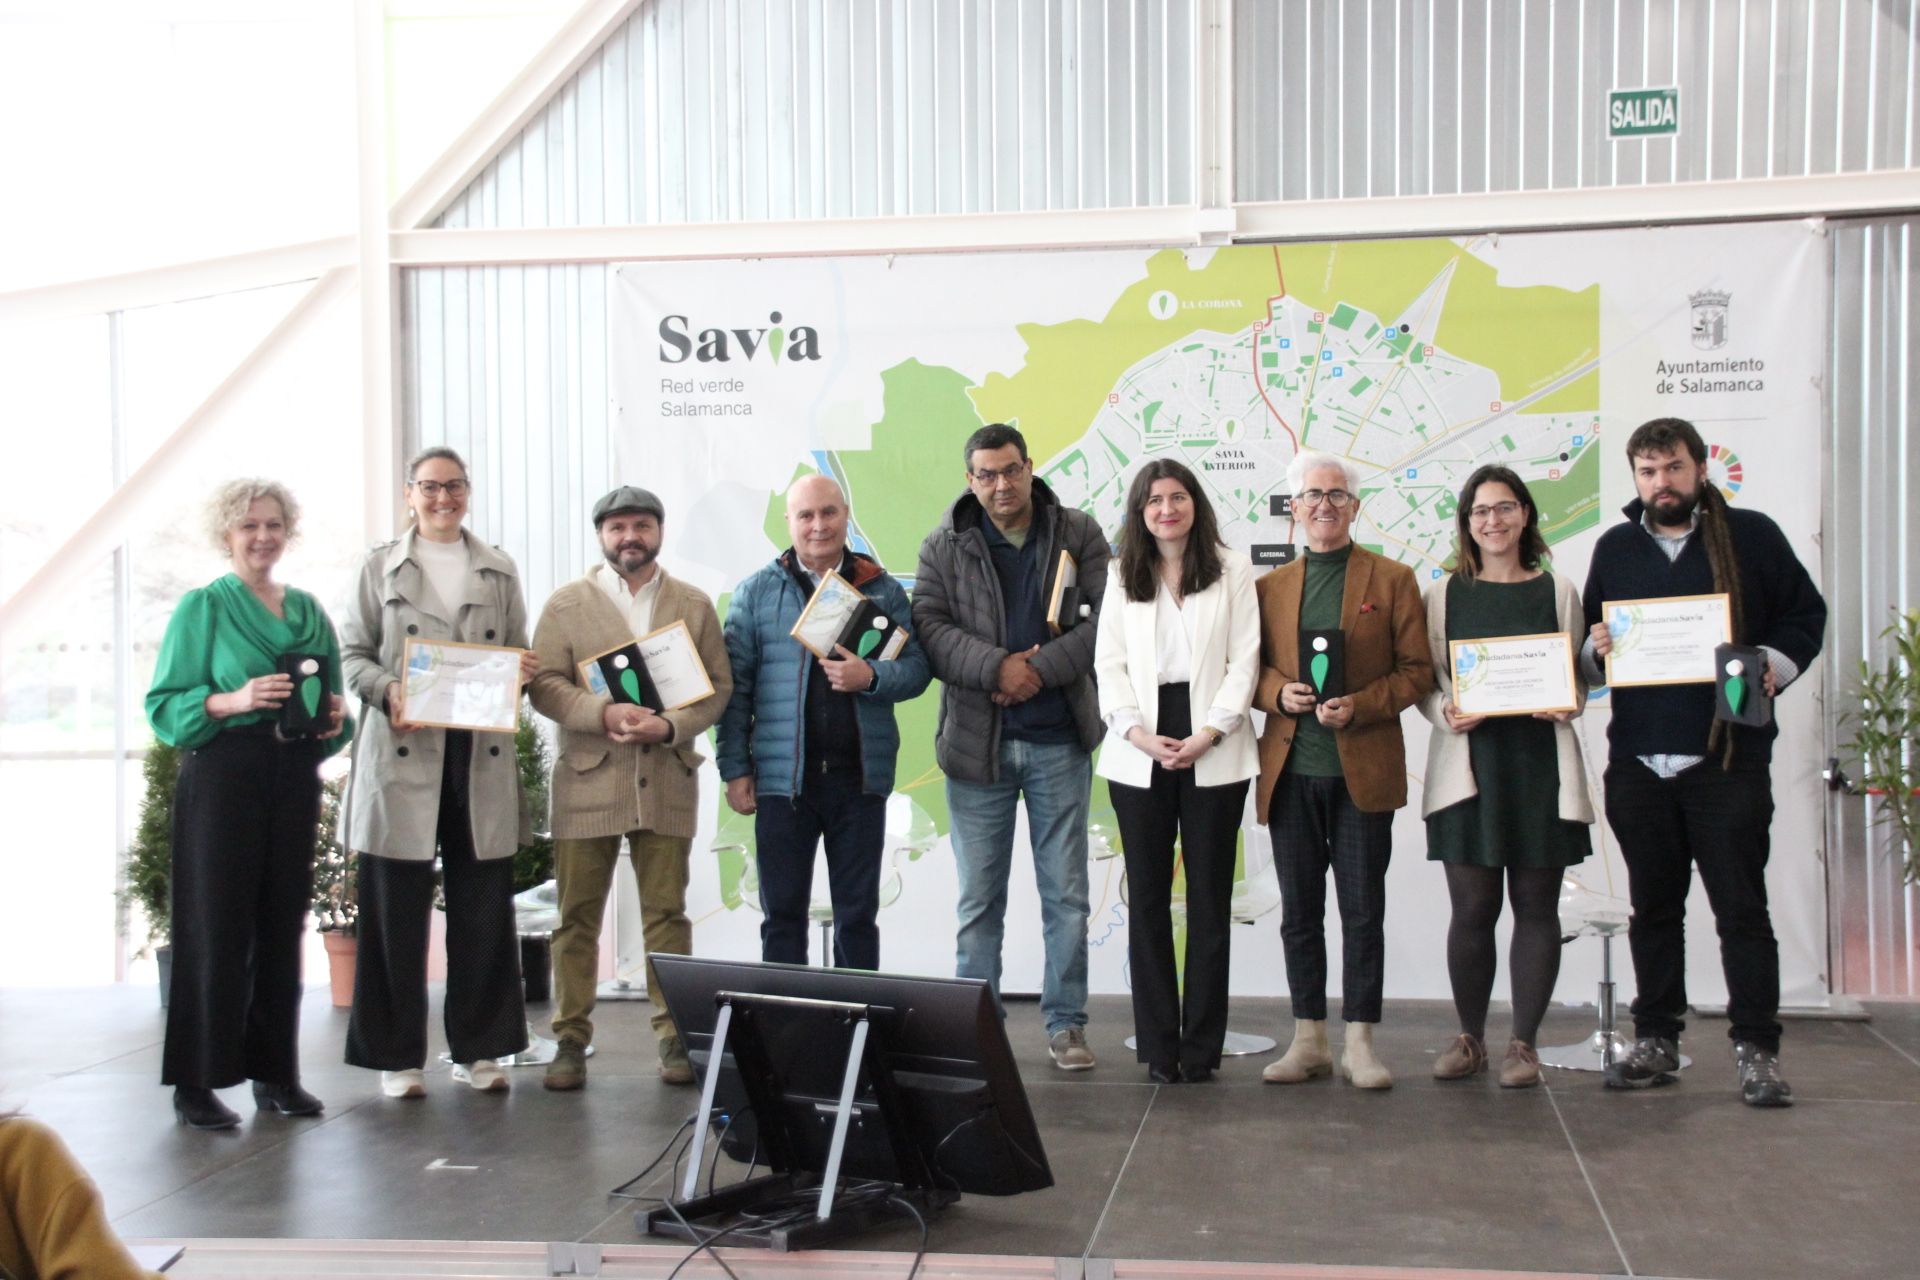 entrega de los reconocimientos a los ‘Ciudadanos Savios’ con motivo de la celebración del ‘Savia Day’